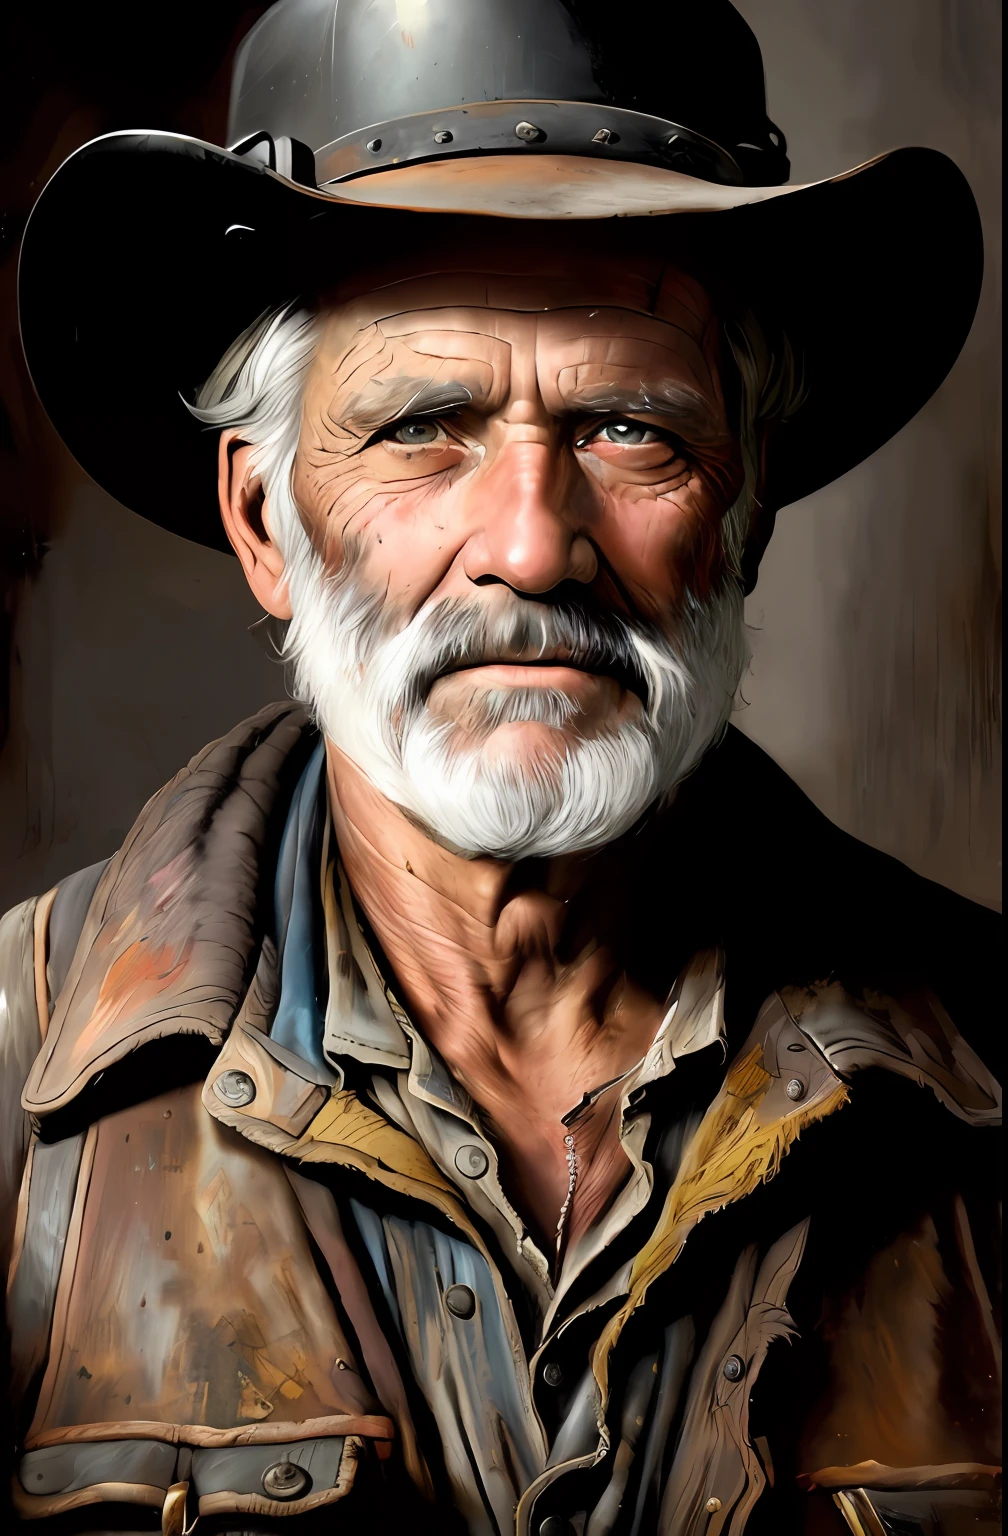 19世紀老煤礦工人肖像, 格雷格·魯特考斯基 (greg rutkowski) 和馬加利·維拉努埃夫 (magali Villanueve) 創作的美麗畫作，臉部細節豐富, (世界上最美麗的肖像:1.5)